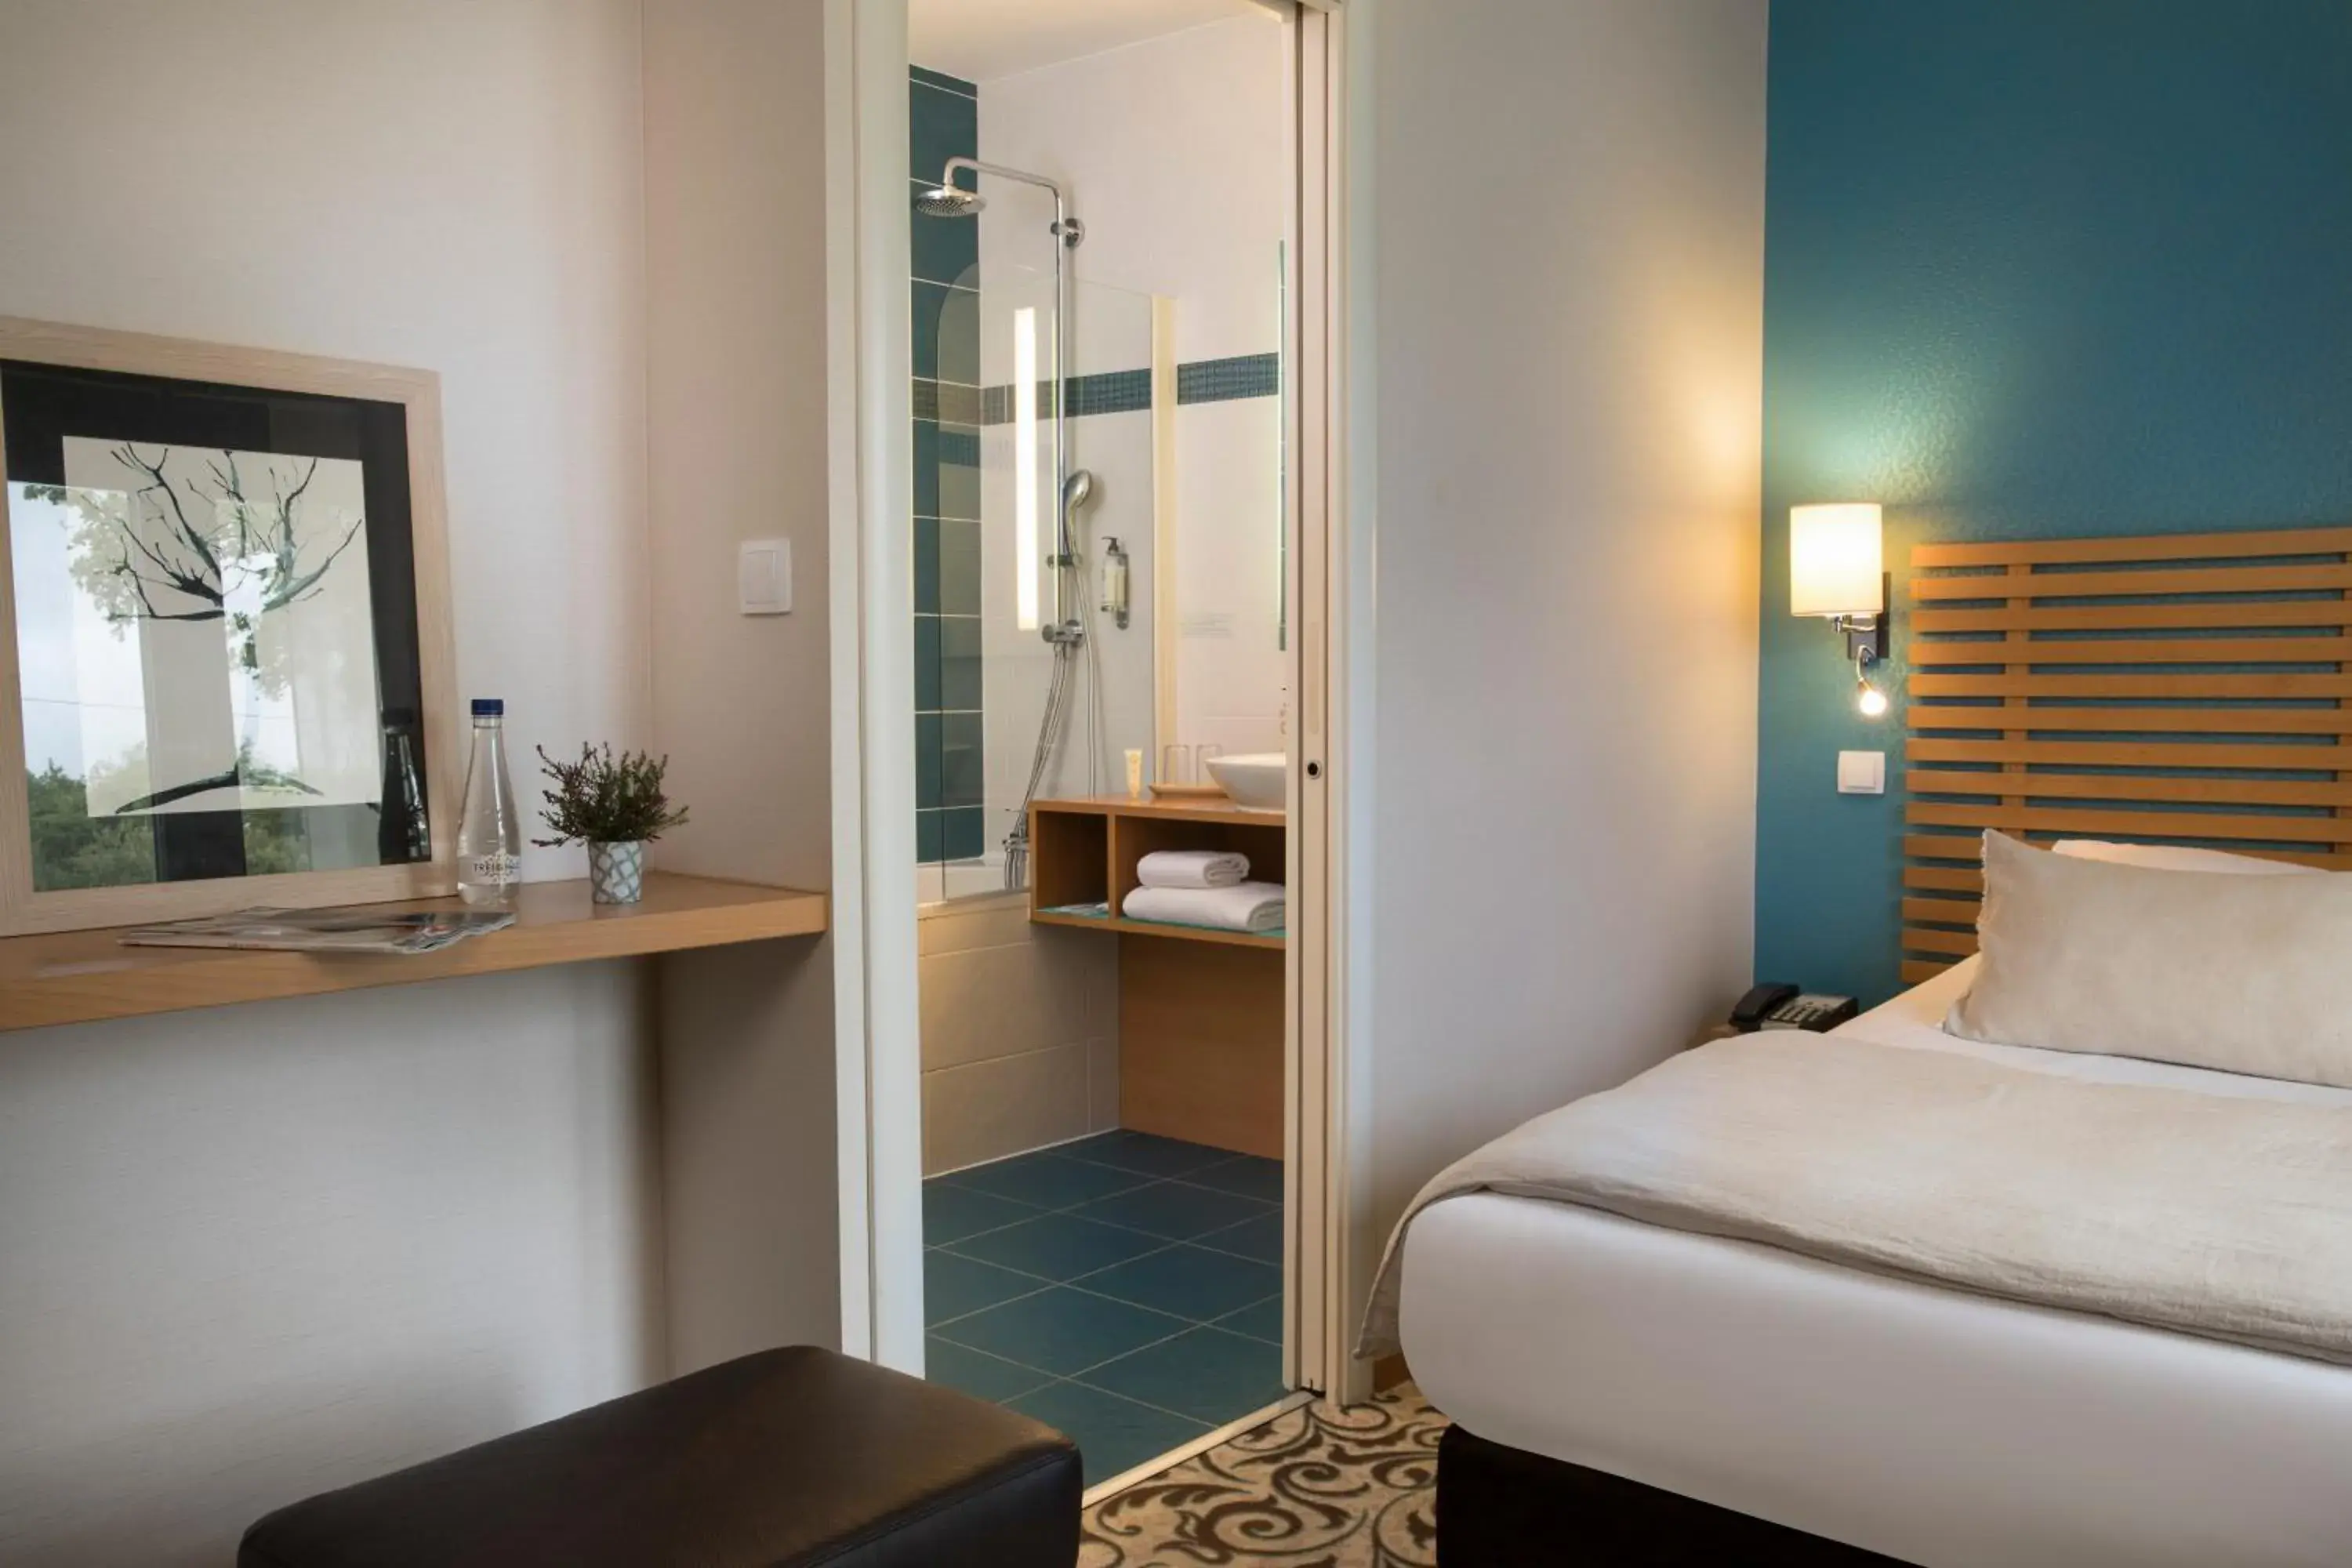 Bathroom, Bed in Best Western Plus Hotel De La Regate